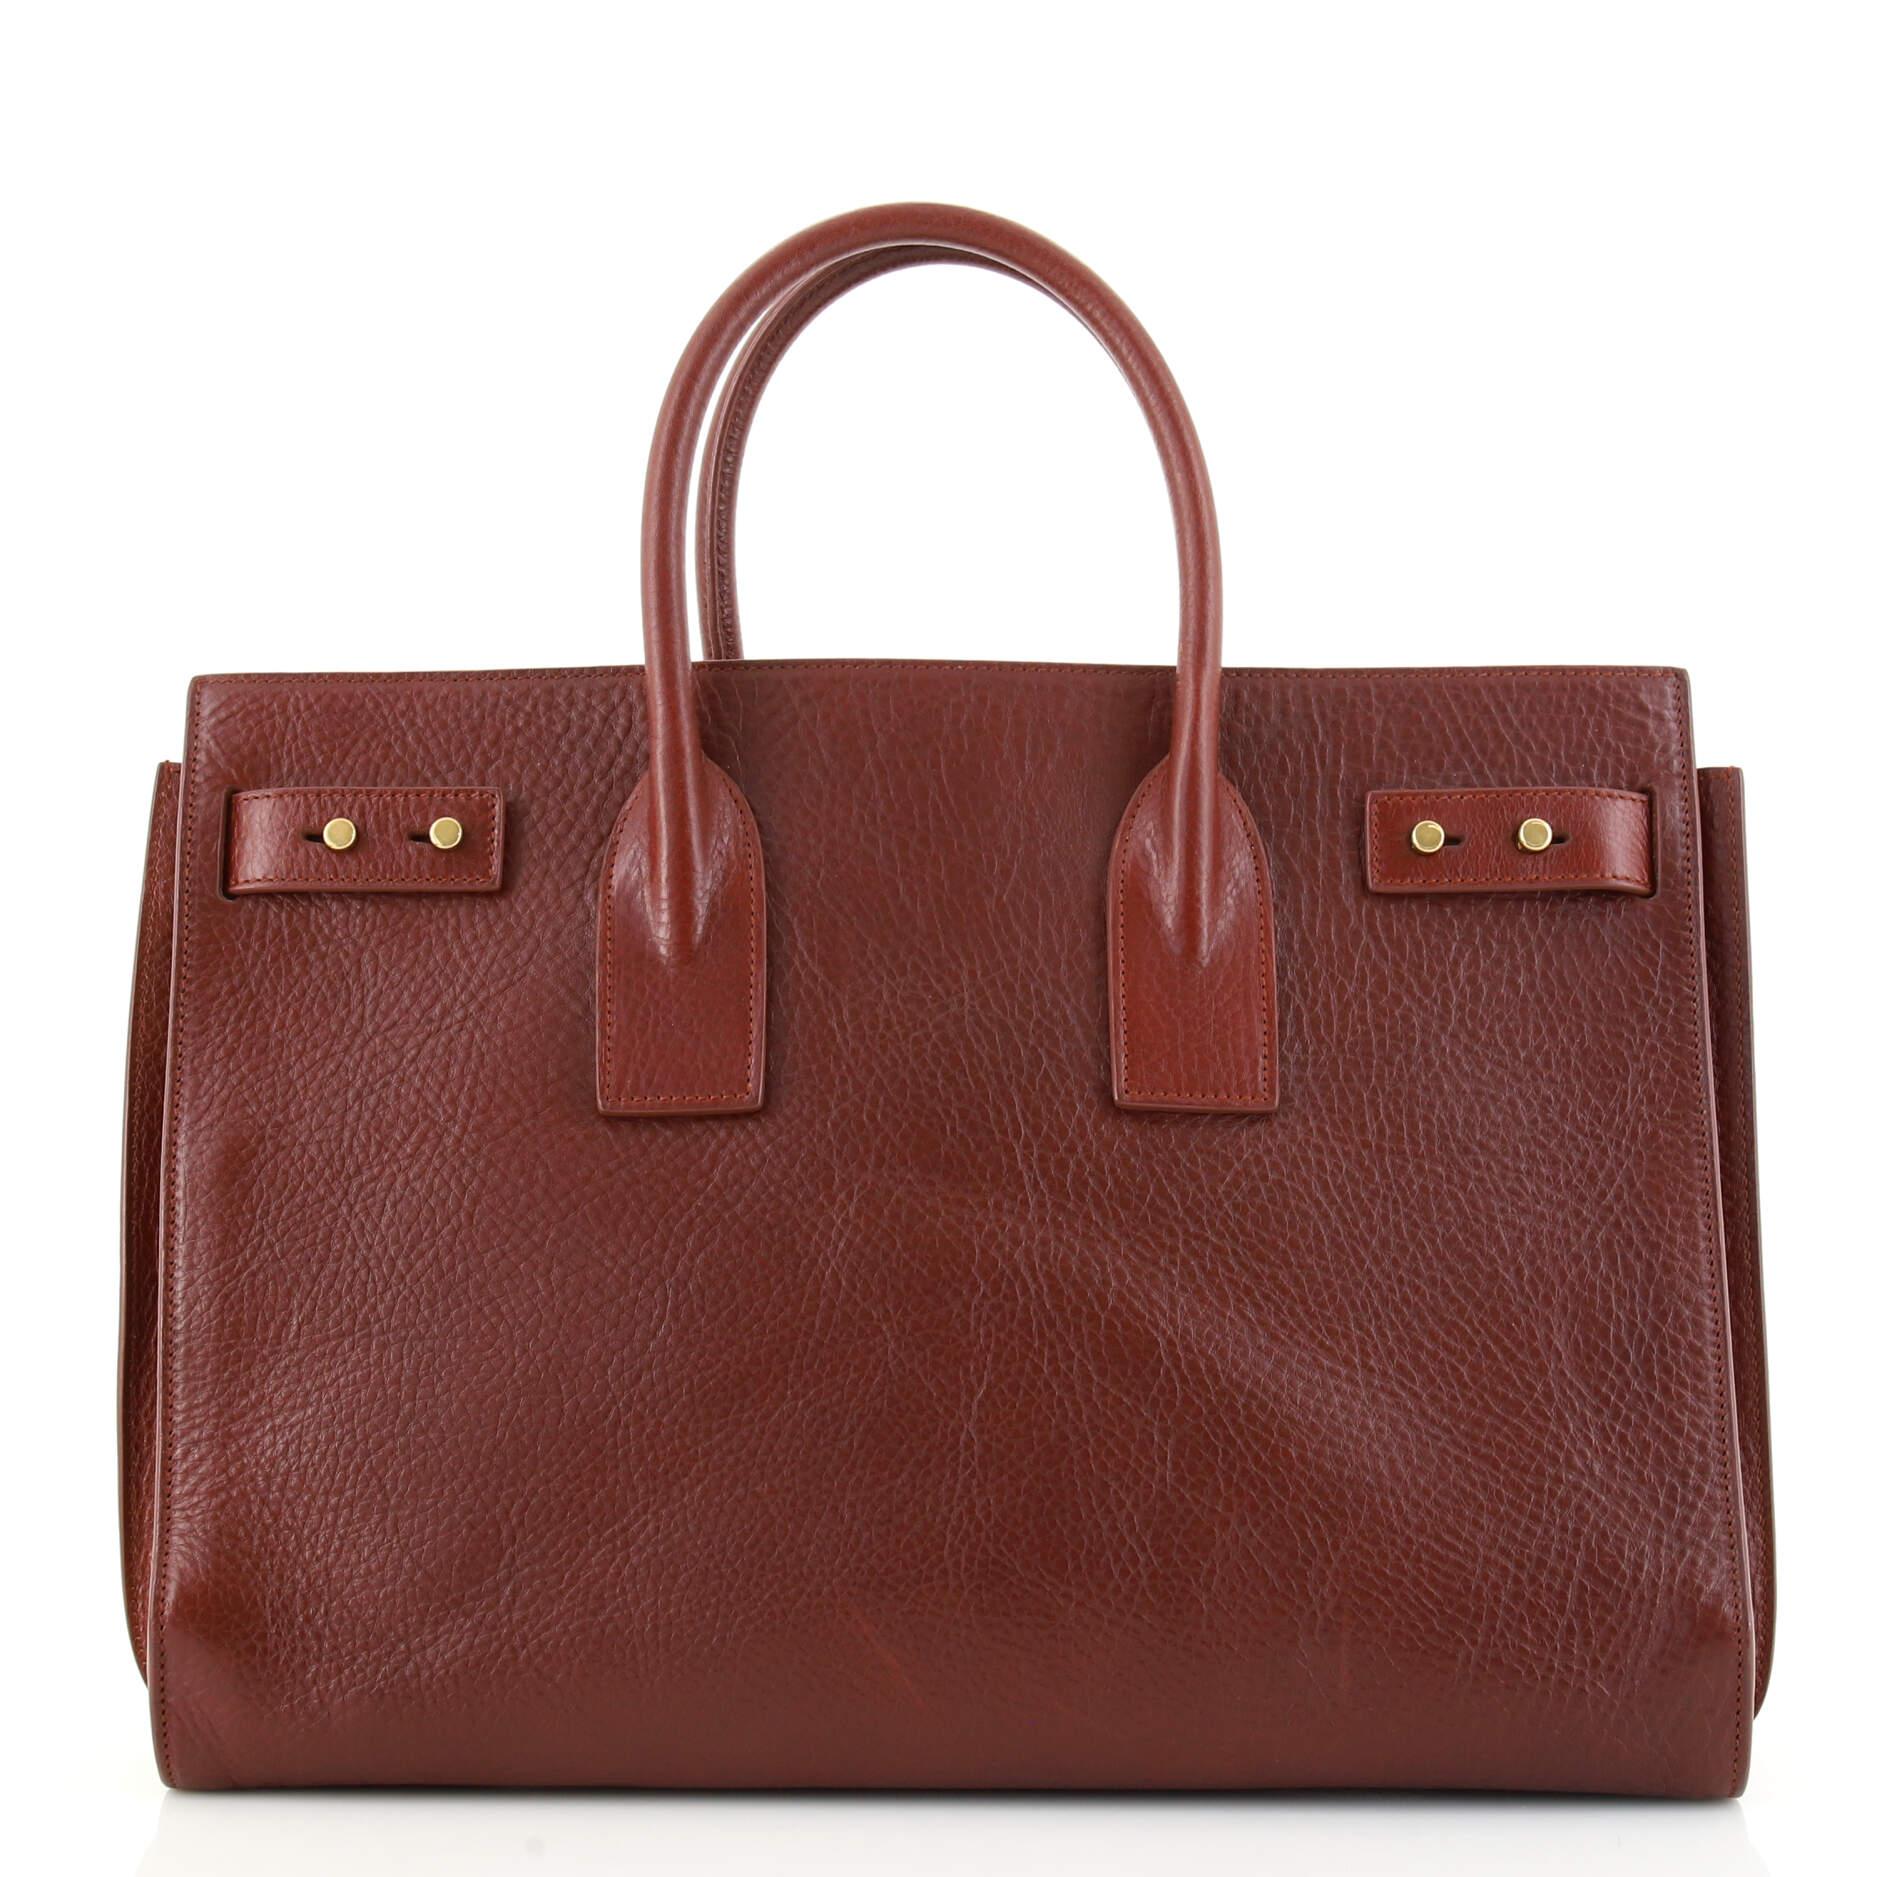 Brown Saint Laurent Sac de Jour Souple Bag Leather Medium